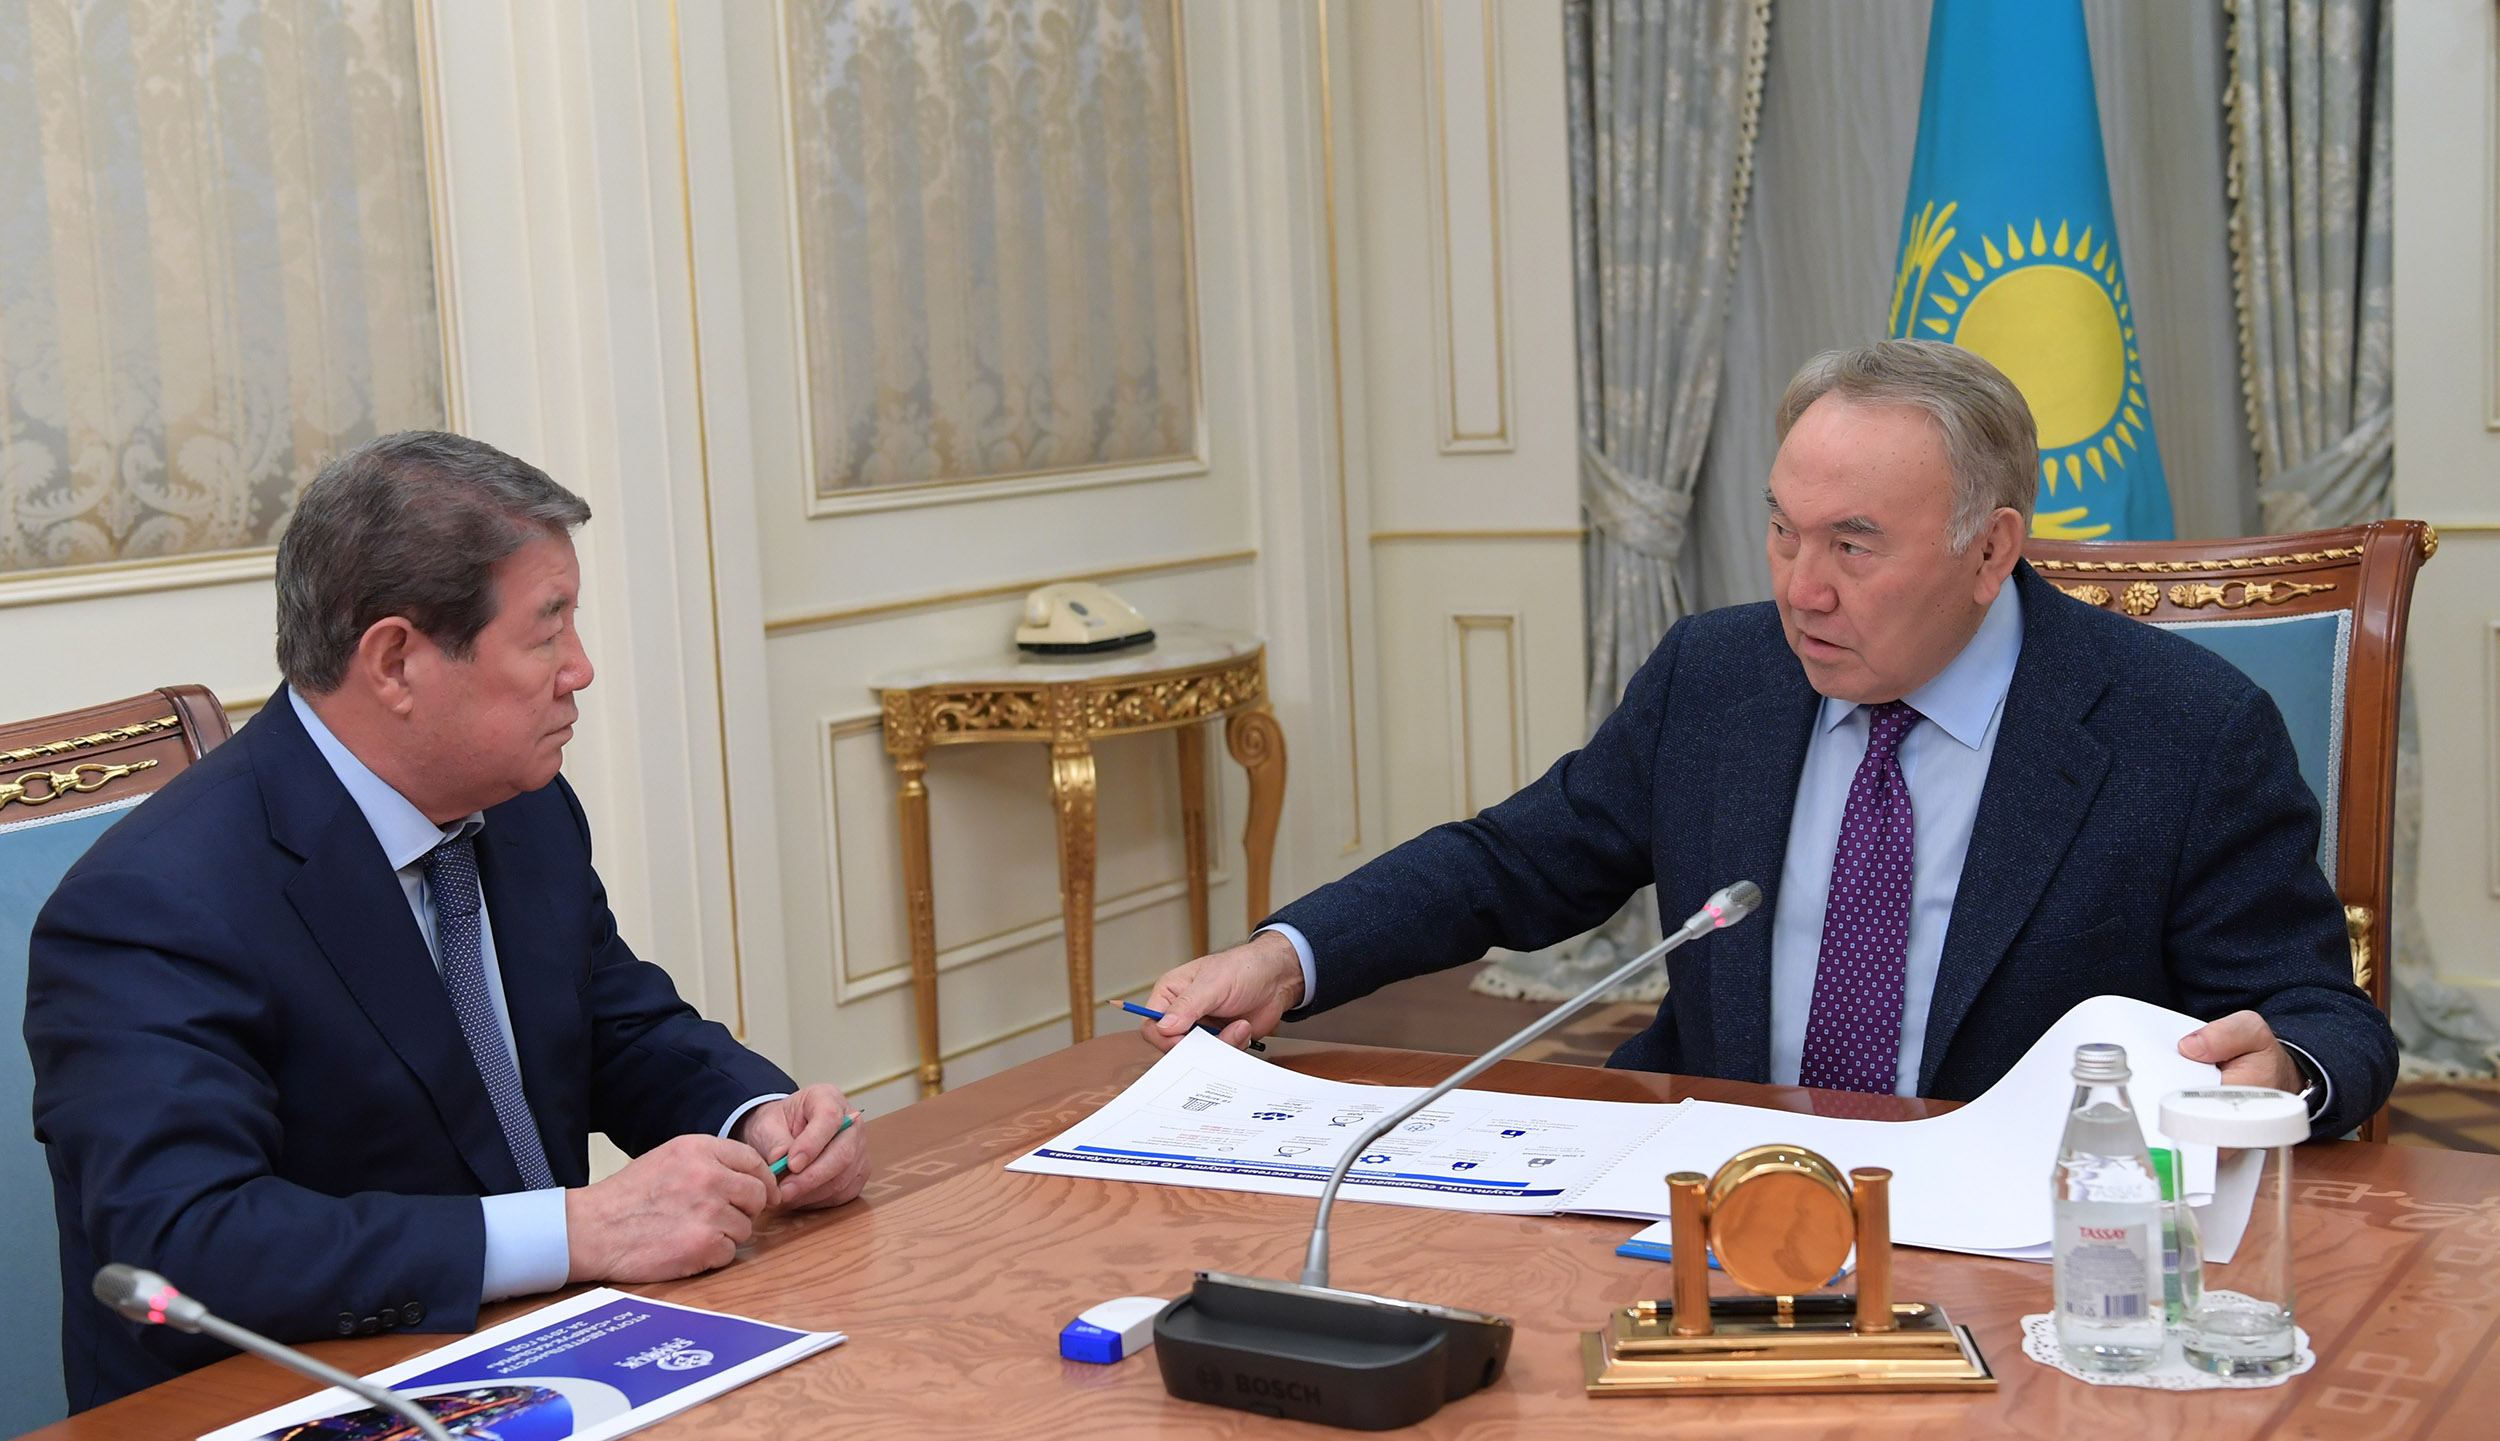 Нурсултан Назарбаев встретился с председателем правления АО "Самрук-Казына" Ахметжаном Есимовым